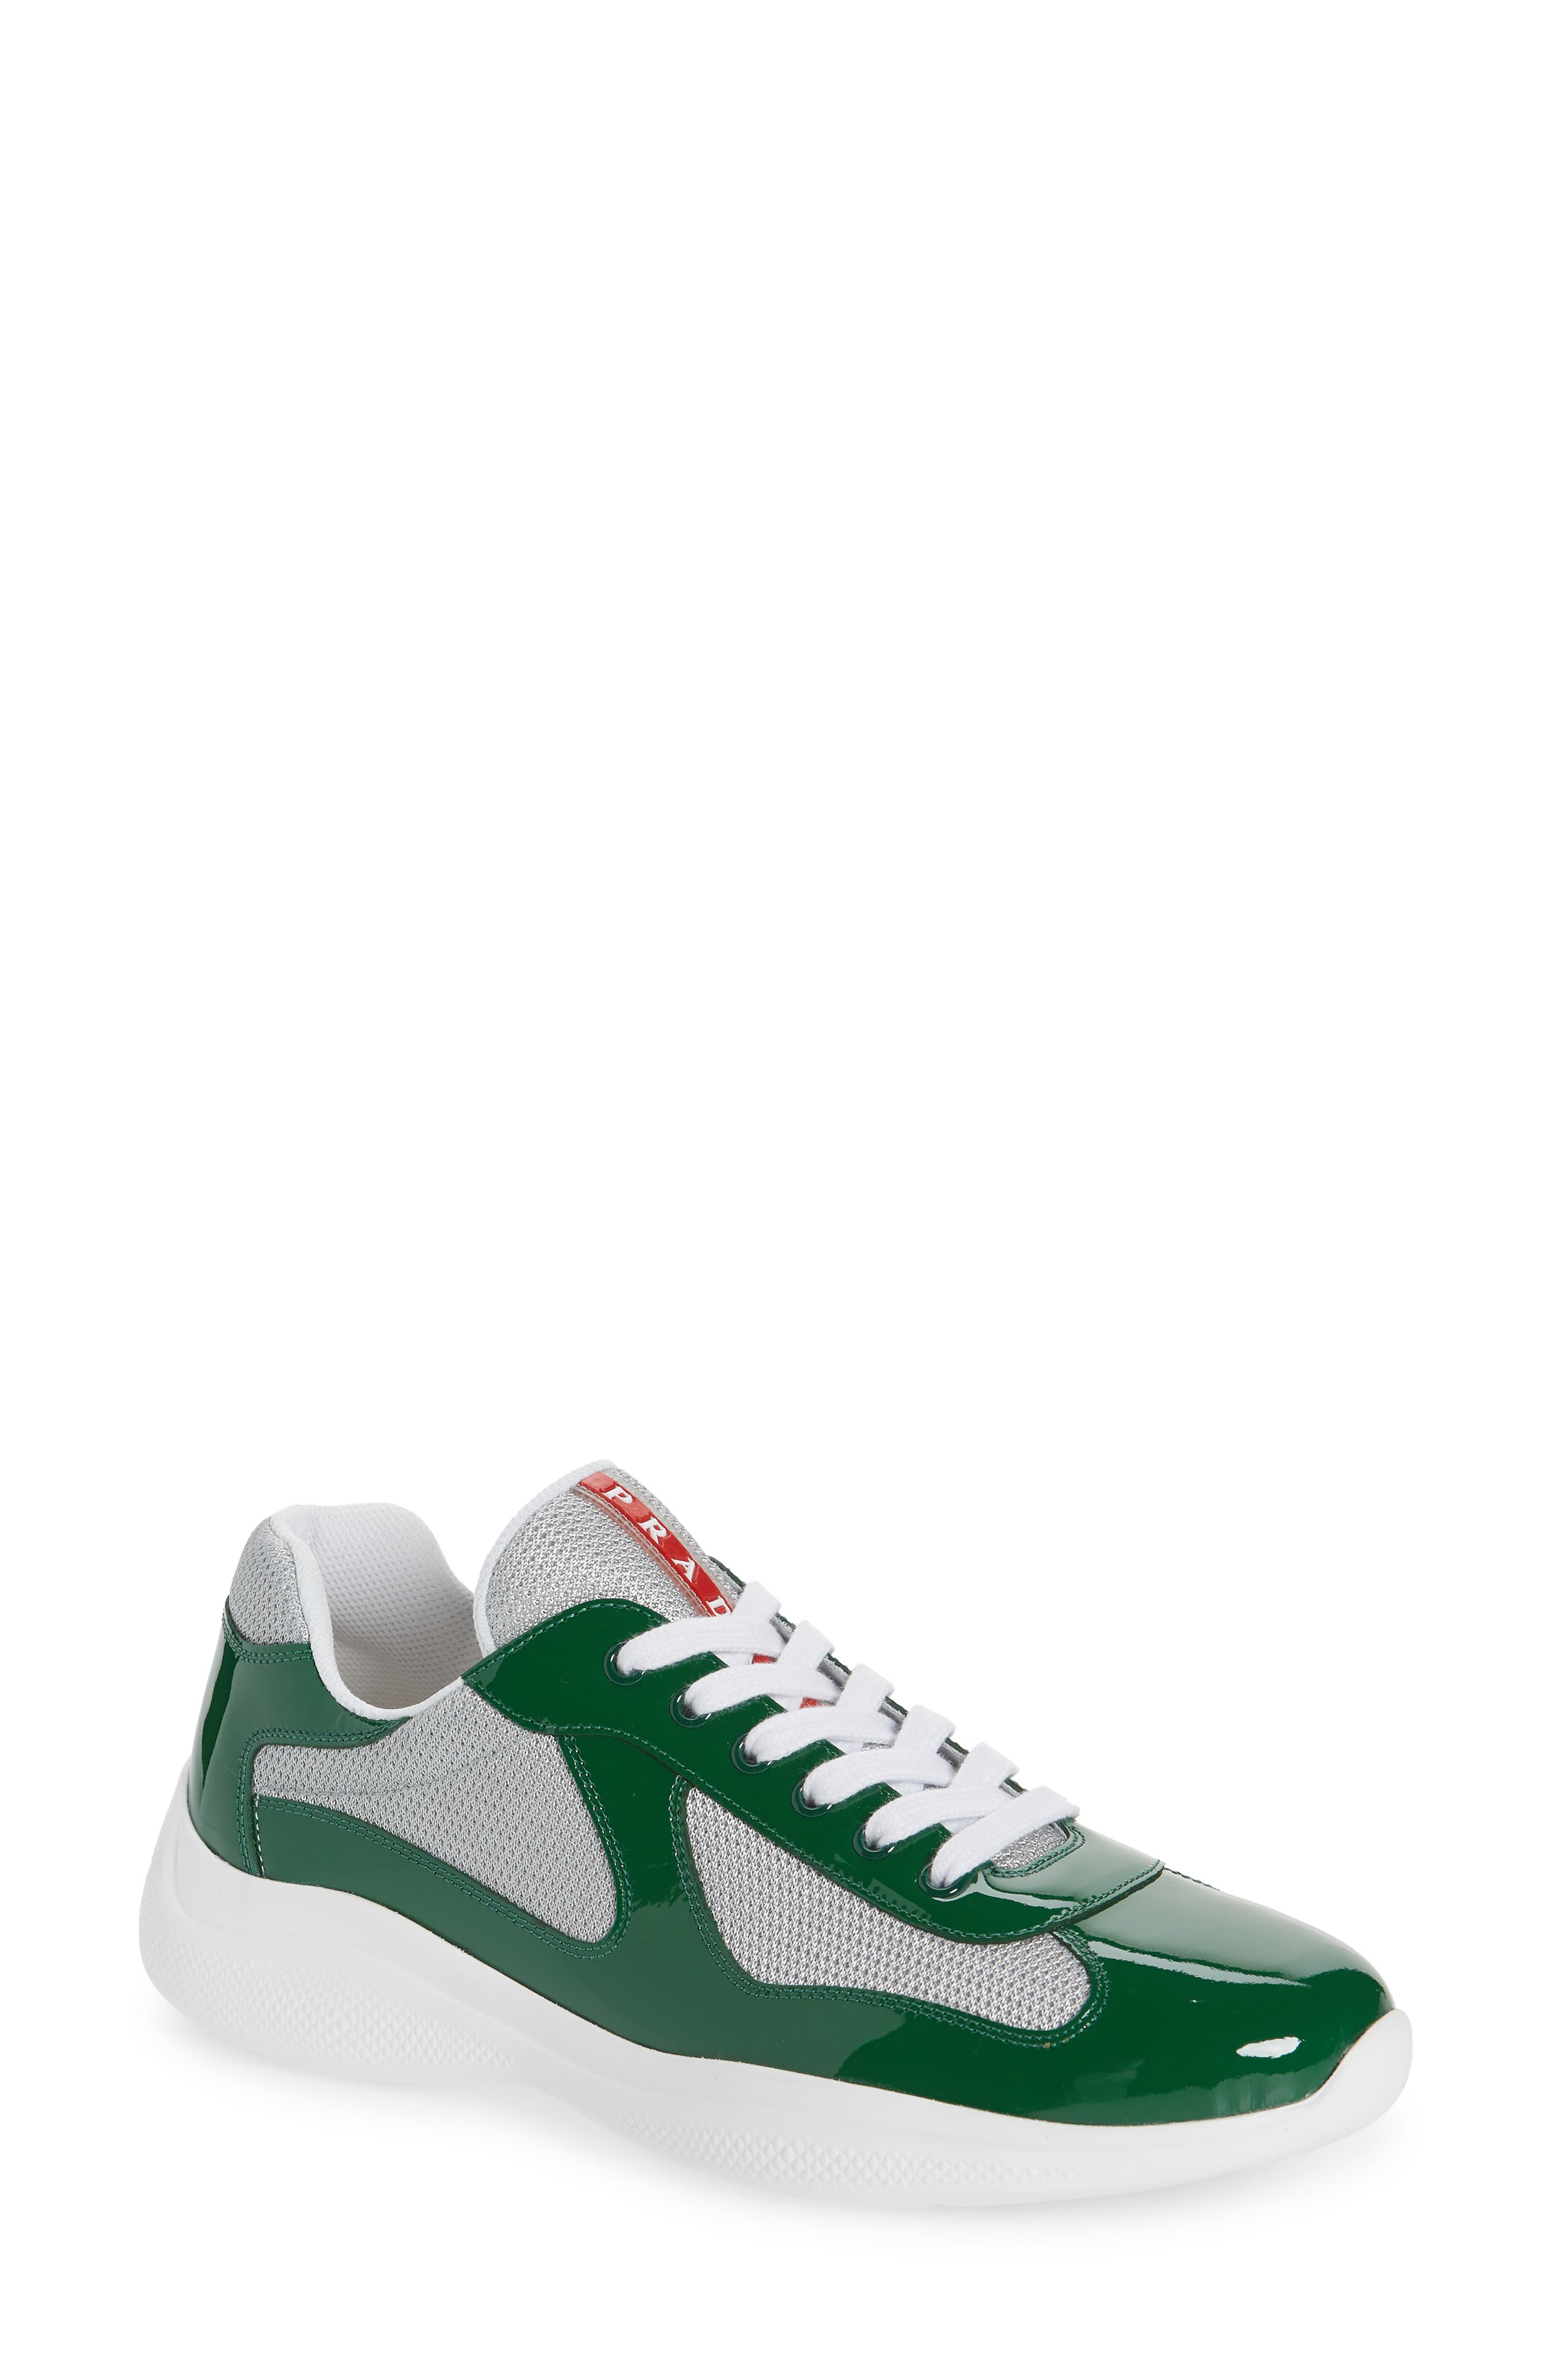 prada sneakers green